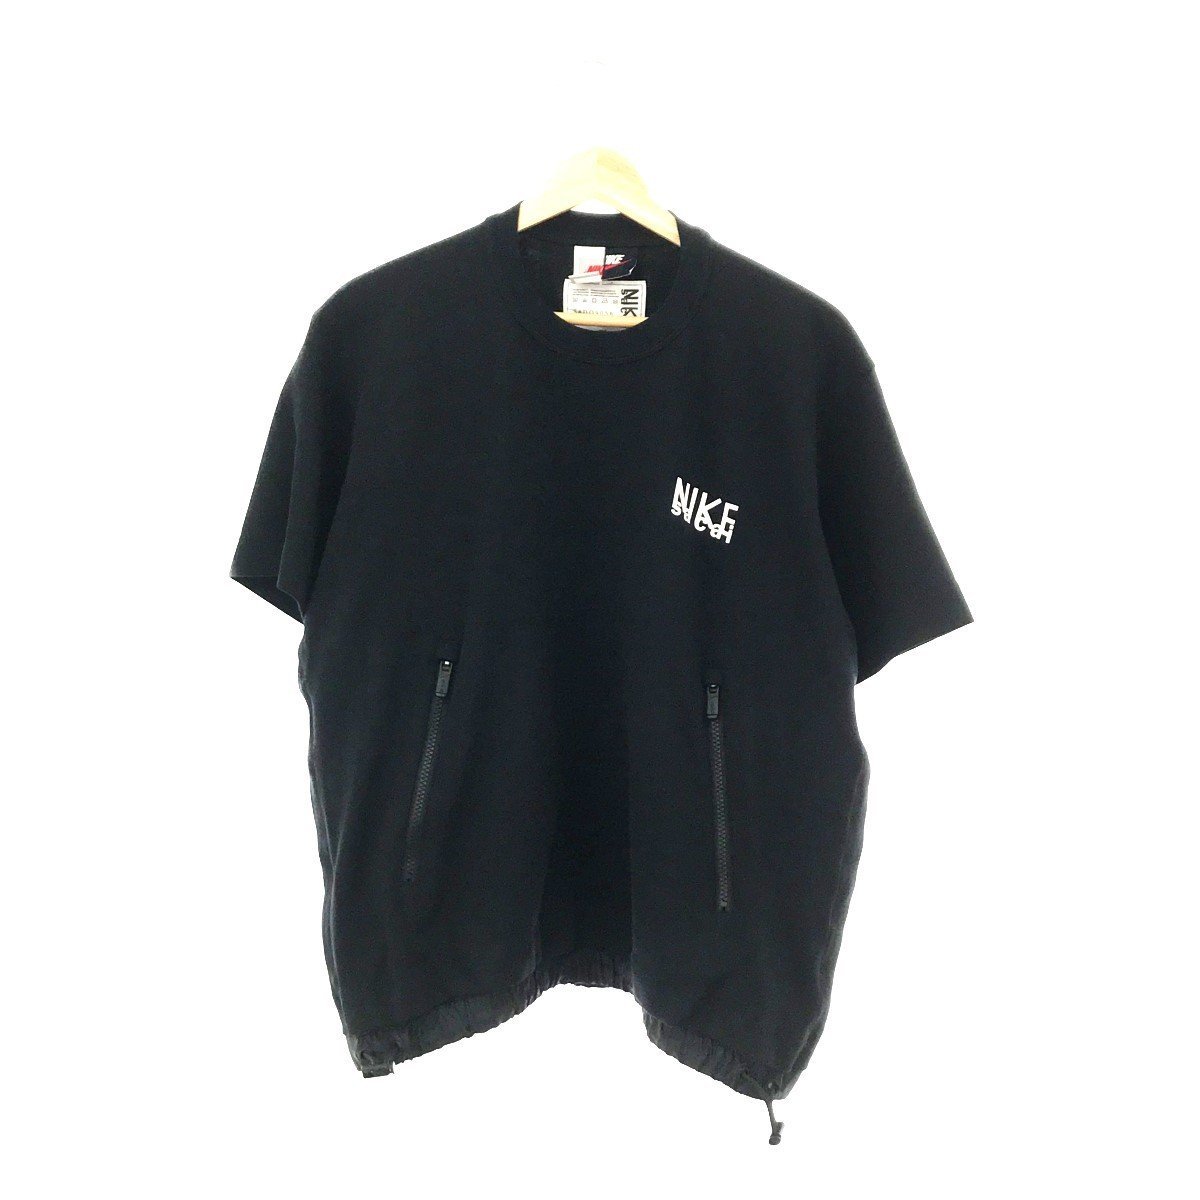 タグ付 NIKE ナイキ SACAI サカイ DQ9056-010 コラボモデル S/S TOP T-SHIRT Tシャツ トップス M ブラック